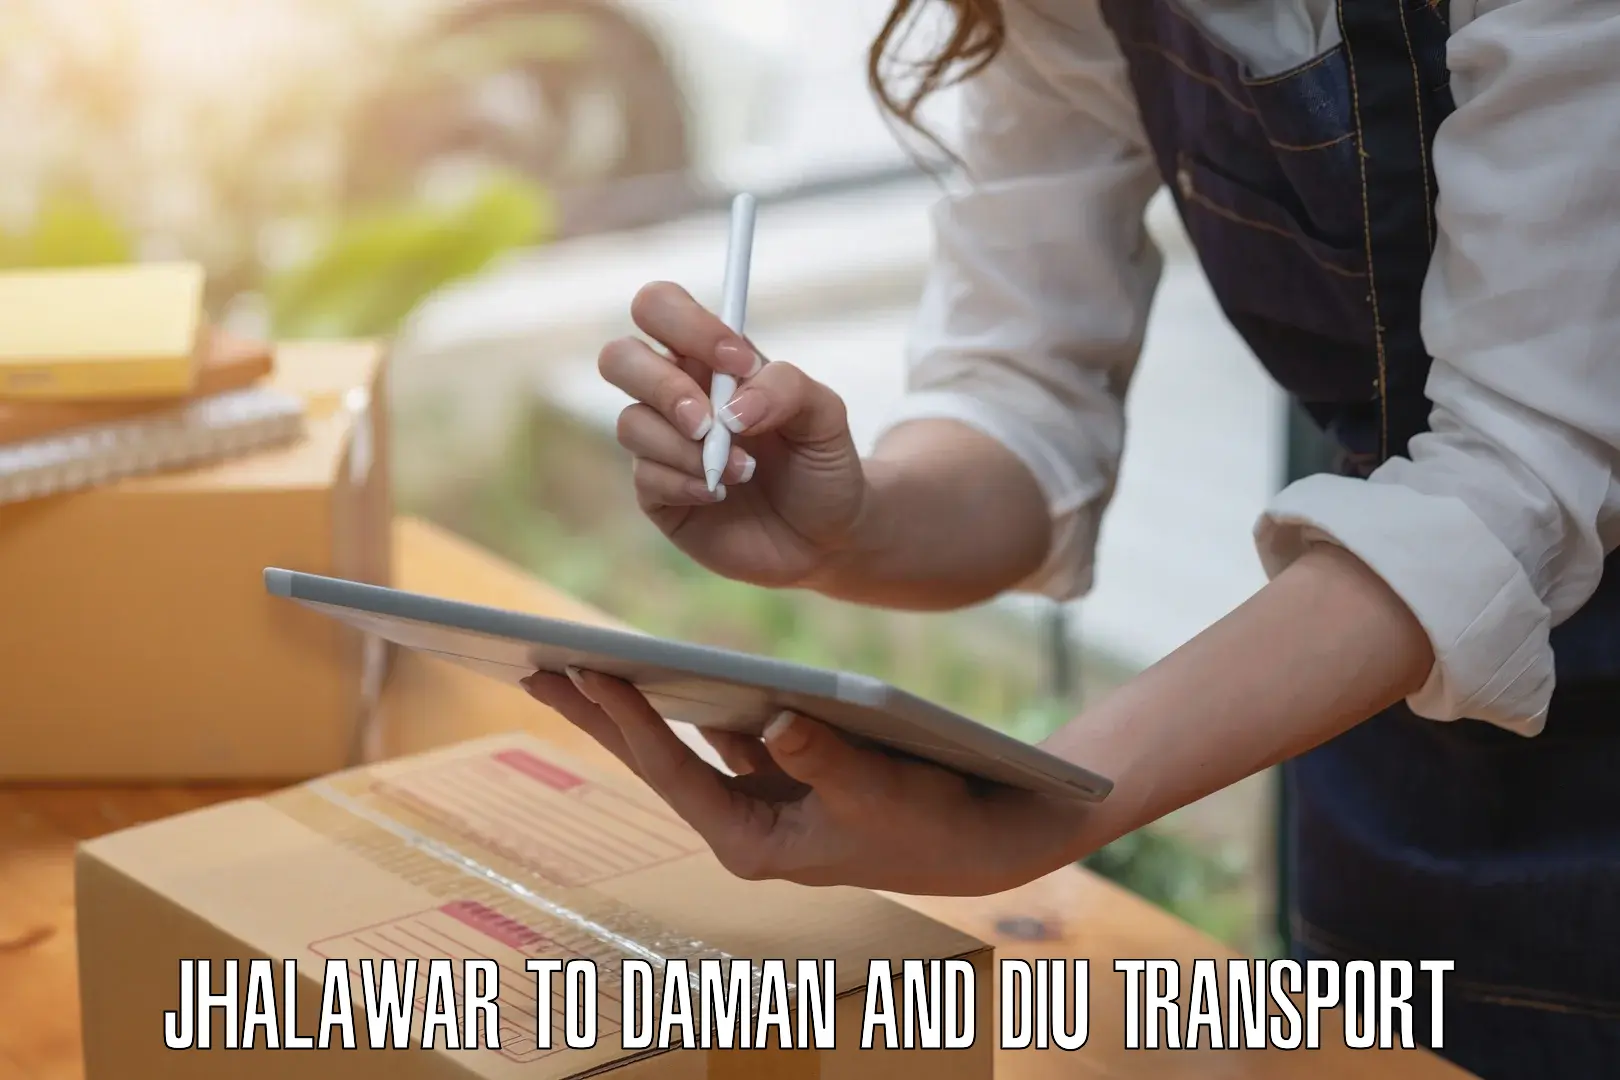 Daily parcel service transport Jhalawar to Daman and Diu